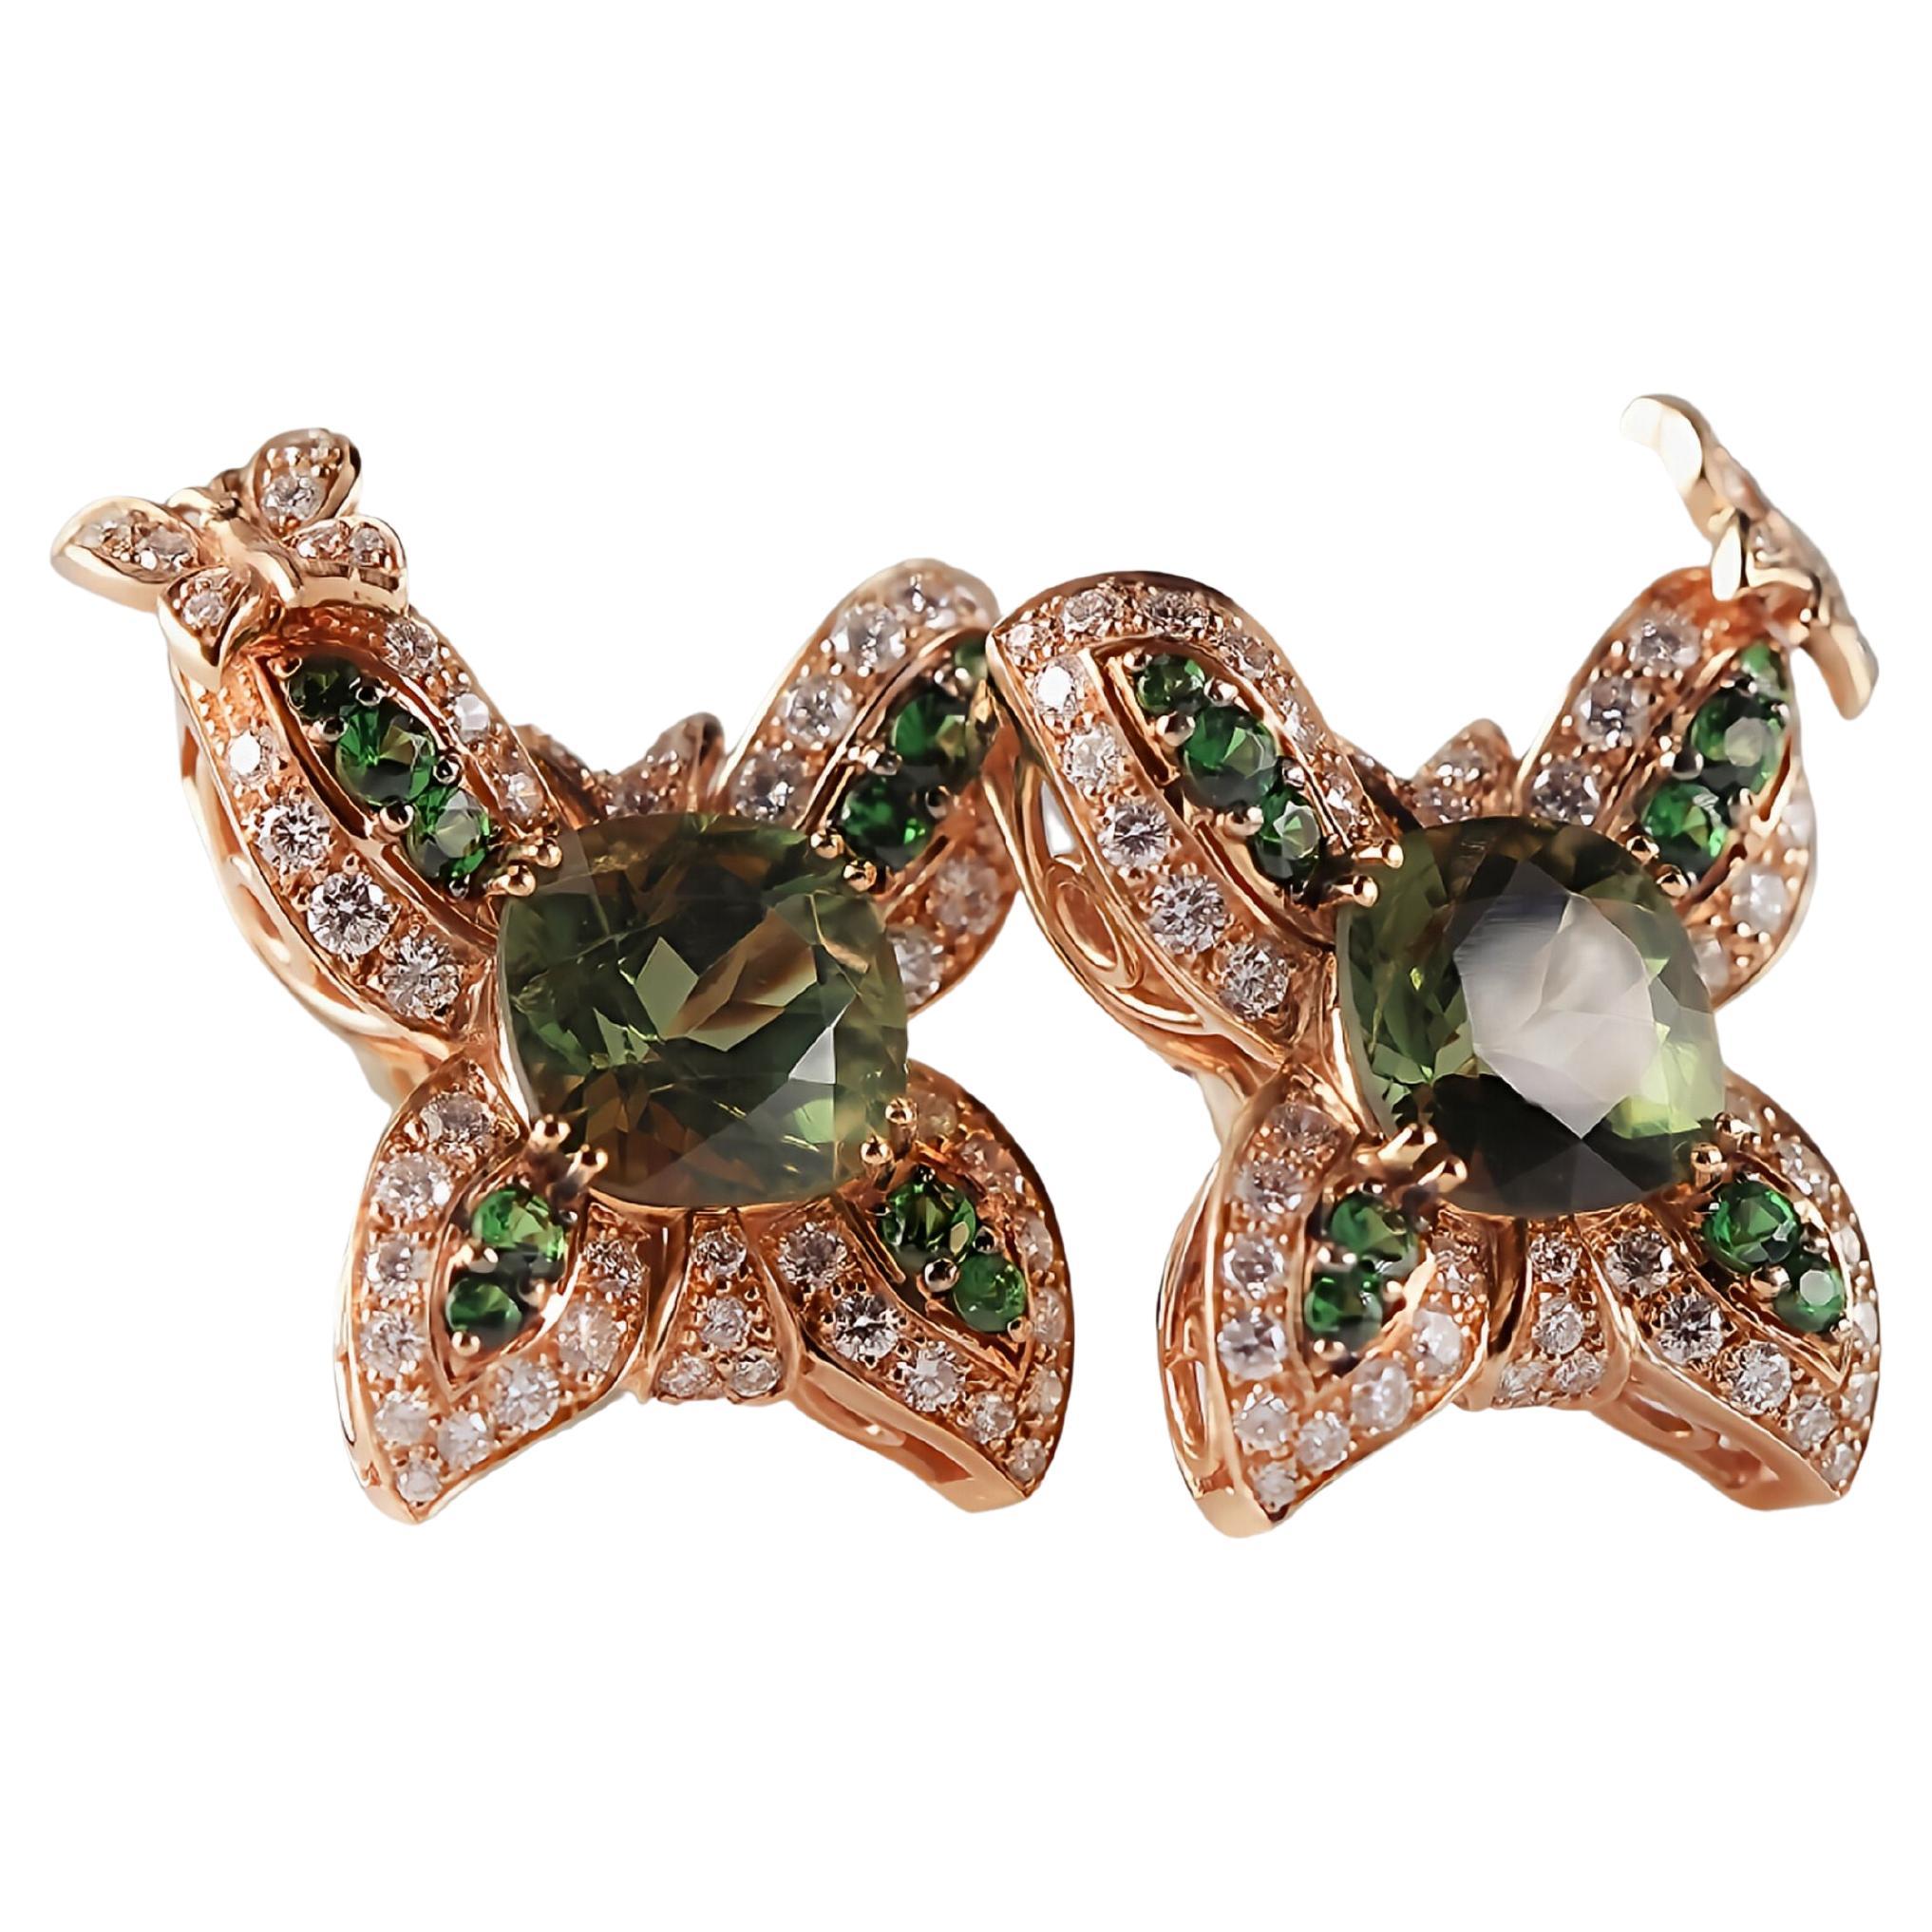 Boucles d'oreilles en or rose 18 carats avec tourmalines vertes, diamants et tsavorites